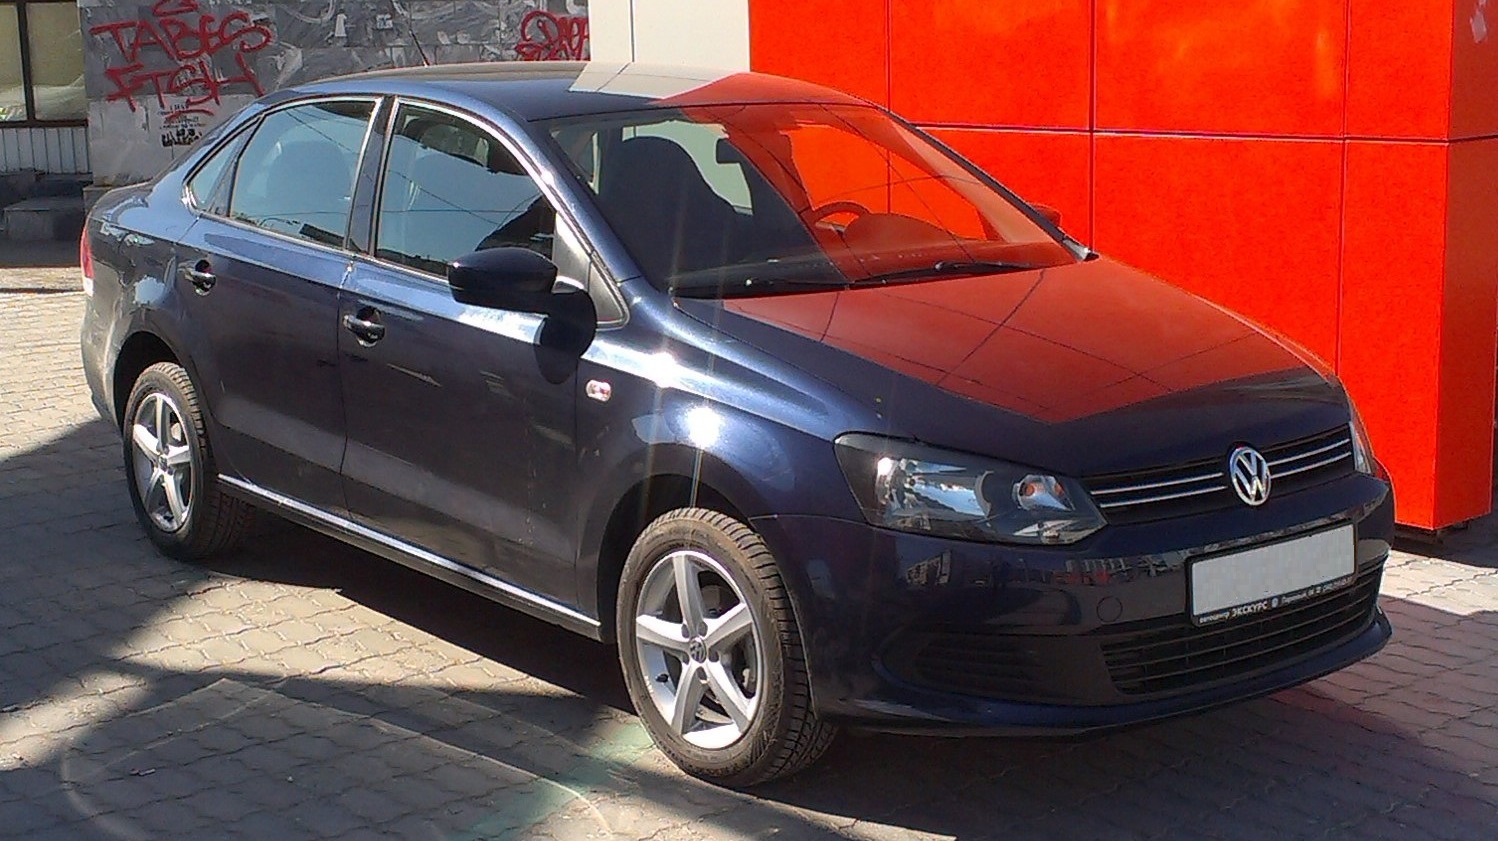 Фольксваген поло 2012 года купить. Фольксваген поло 2012 черный. Volkswagen Polo sedan 2012. Фольксваген поло седан 2012. Volkswagen Polo sedan 2012 черный.